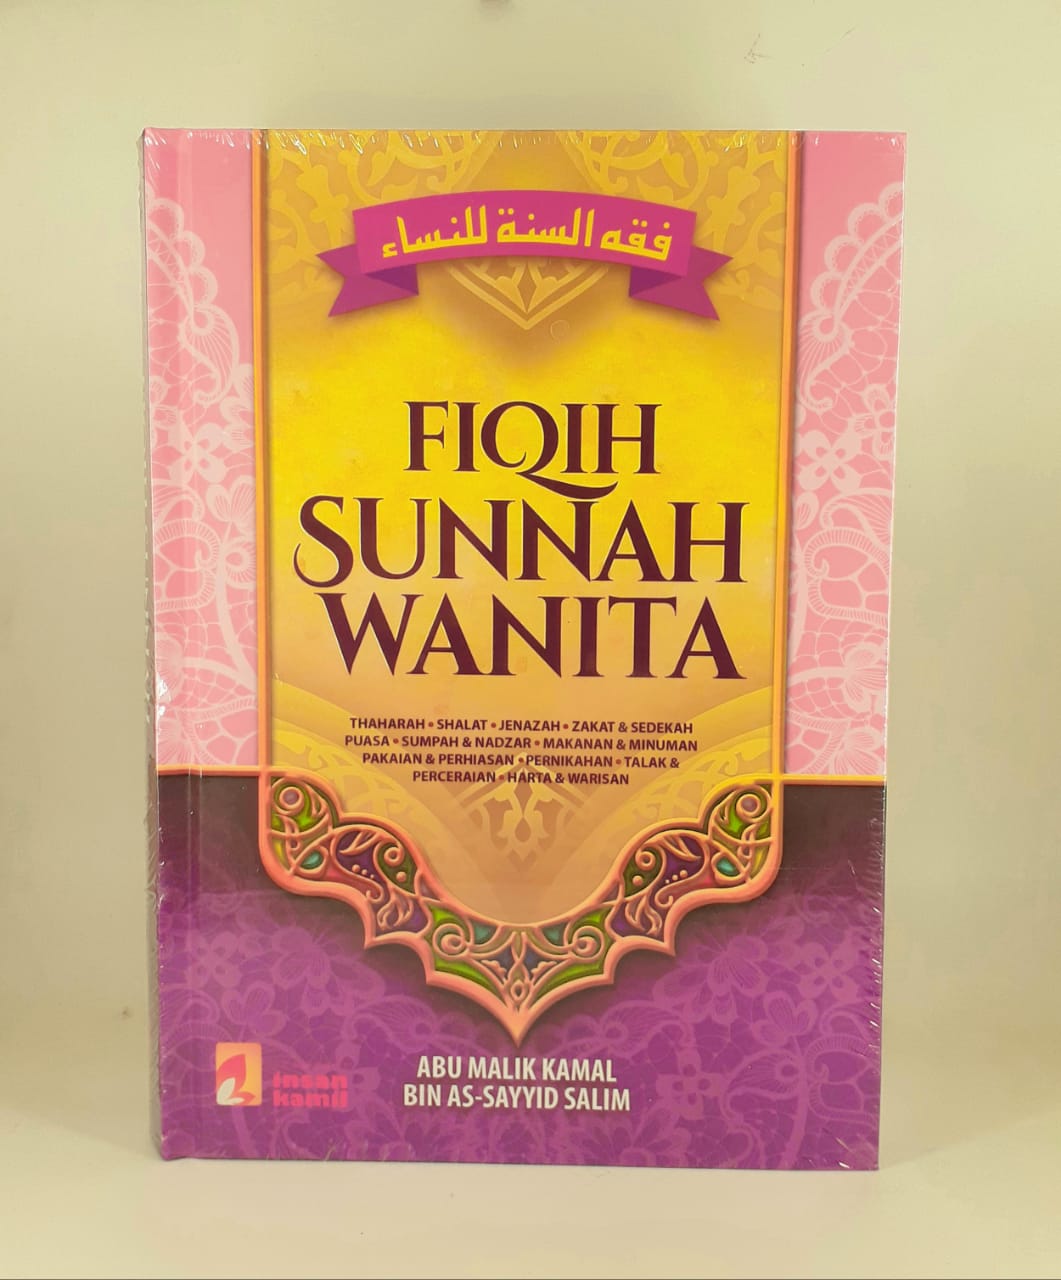 Buku Fiqih Sunnah Wanita Fikih Sunnah Wanita Insan Kamil Lazada